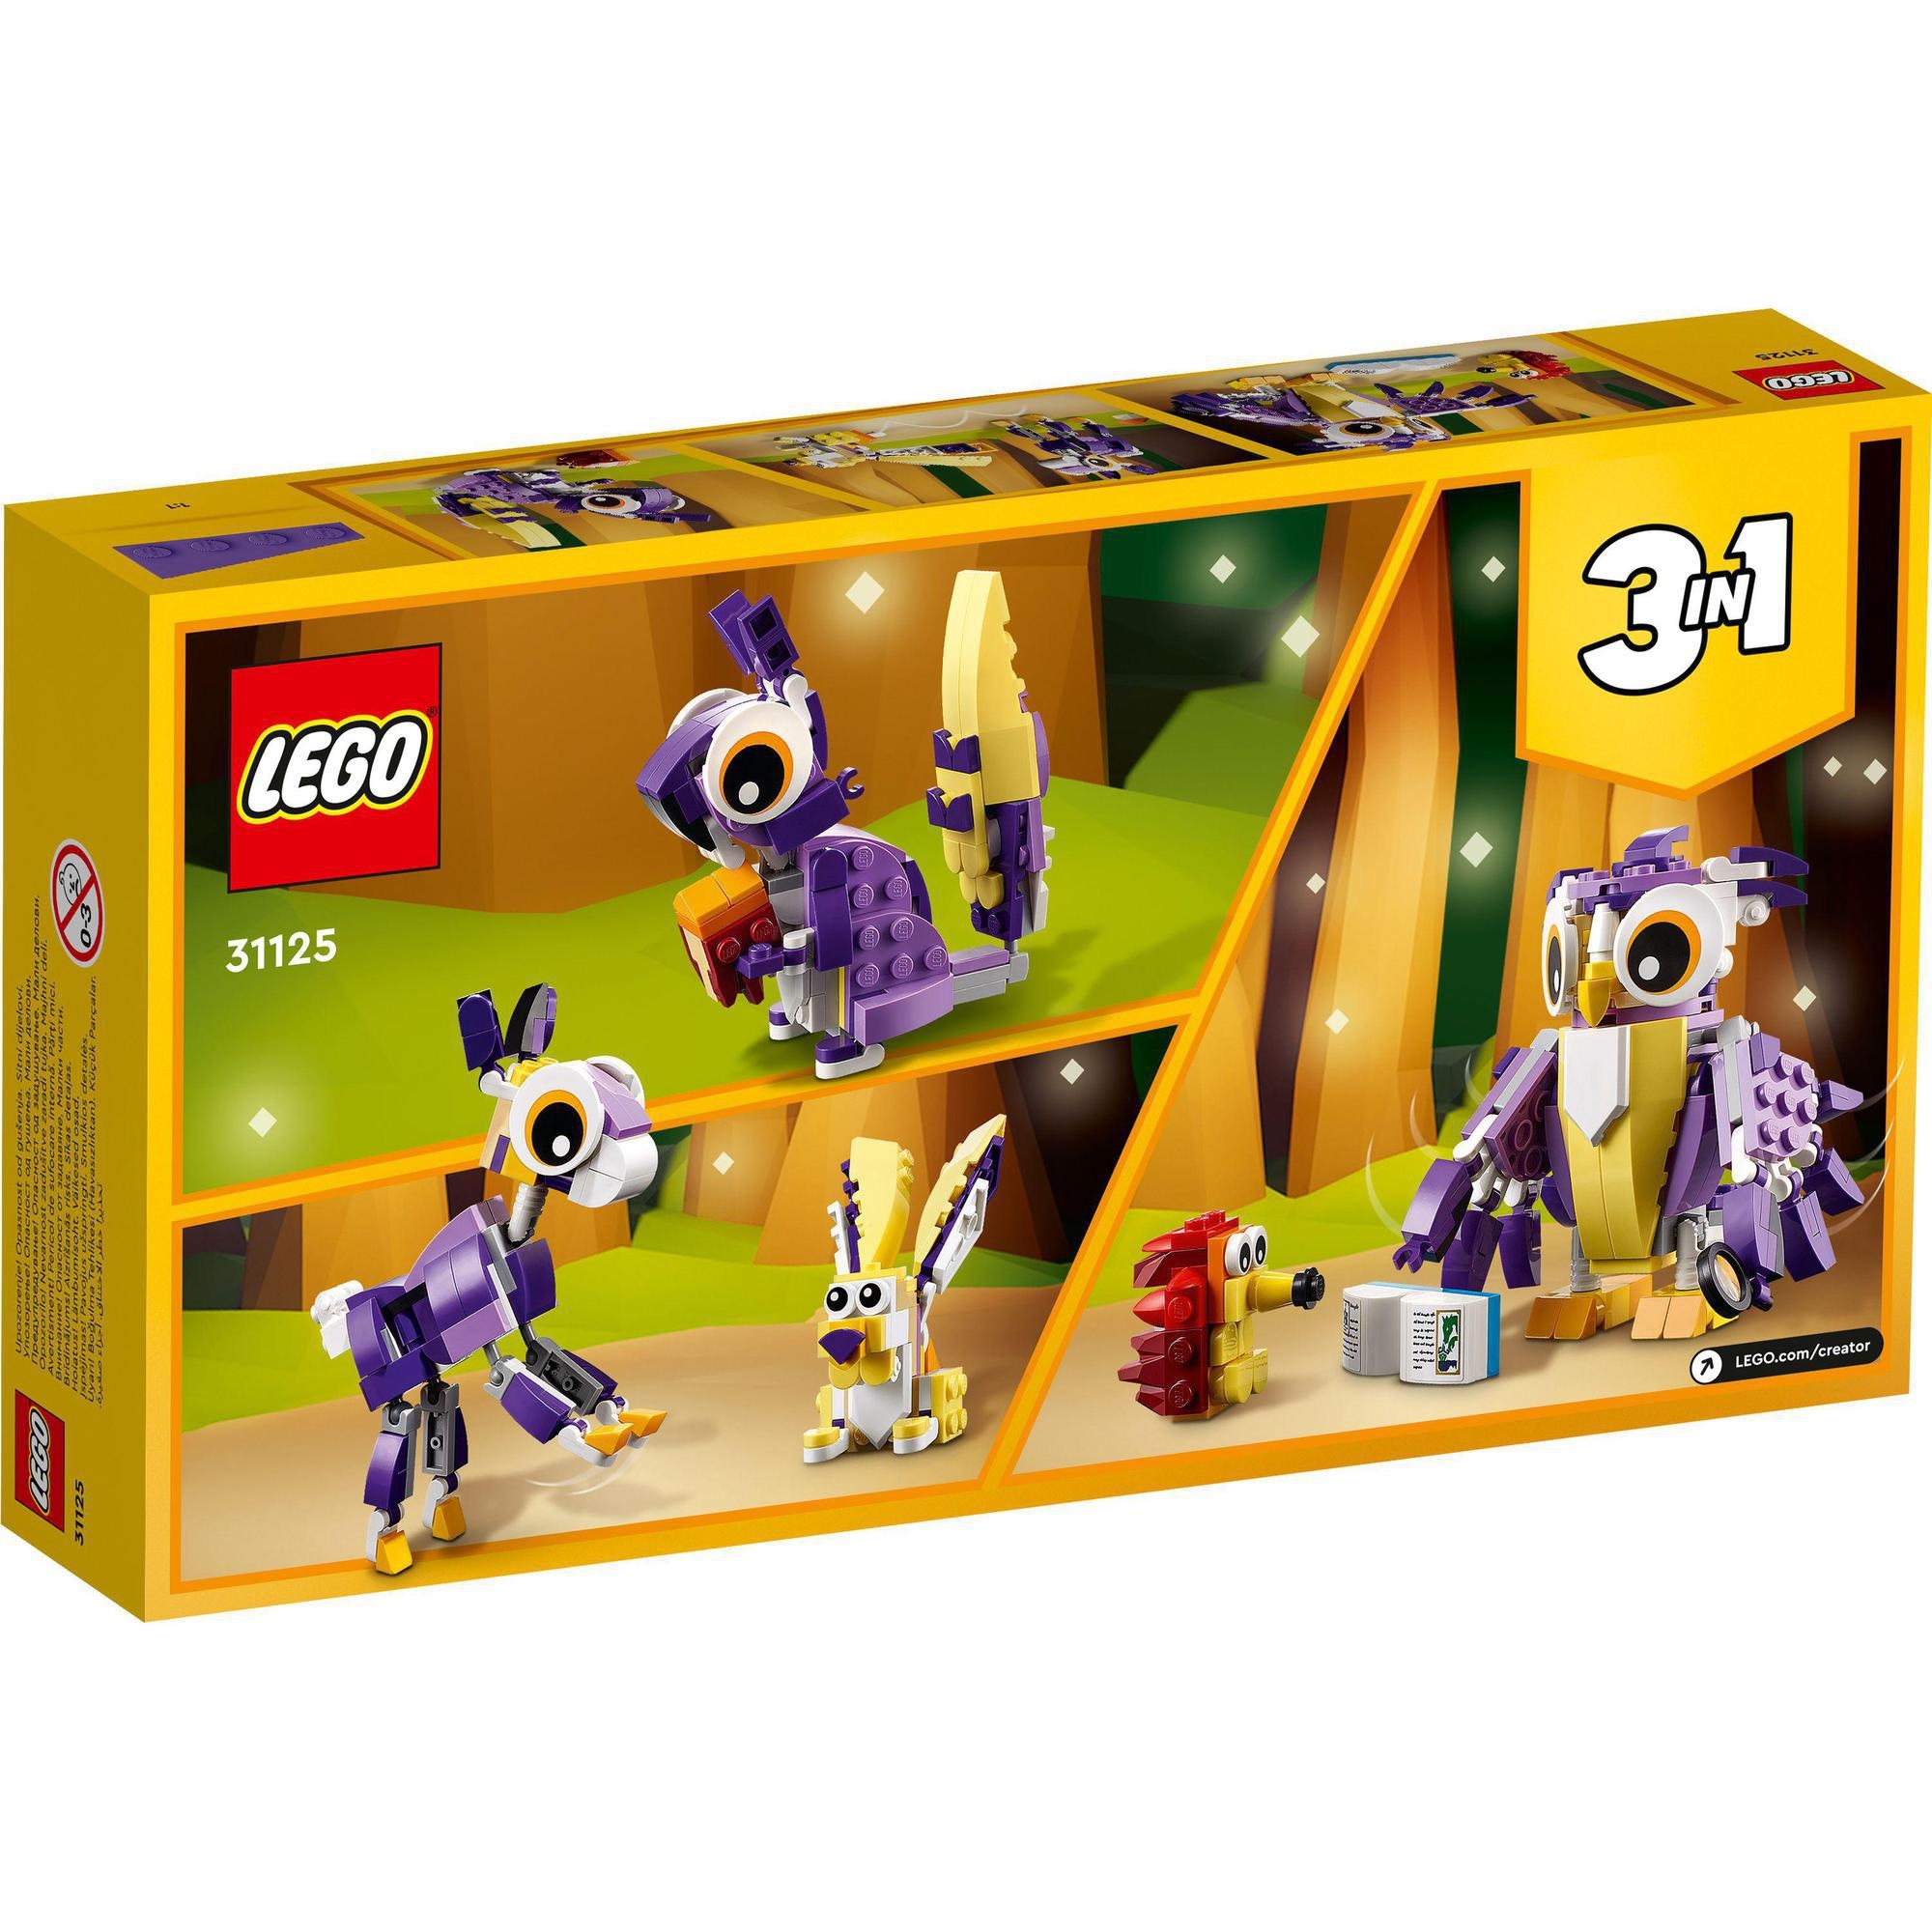 Đồ Chơi Lắp Ráp - LEGO Creator 3in1 31125 Sinh vật rừng xanh (175 chi tiết)